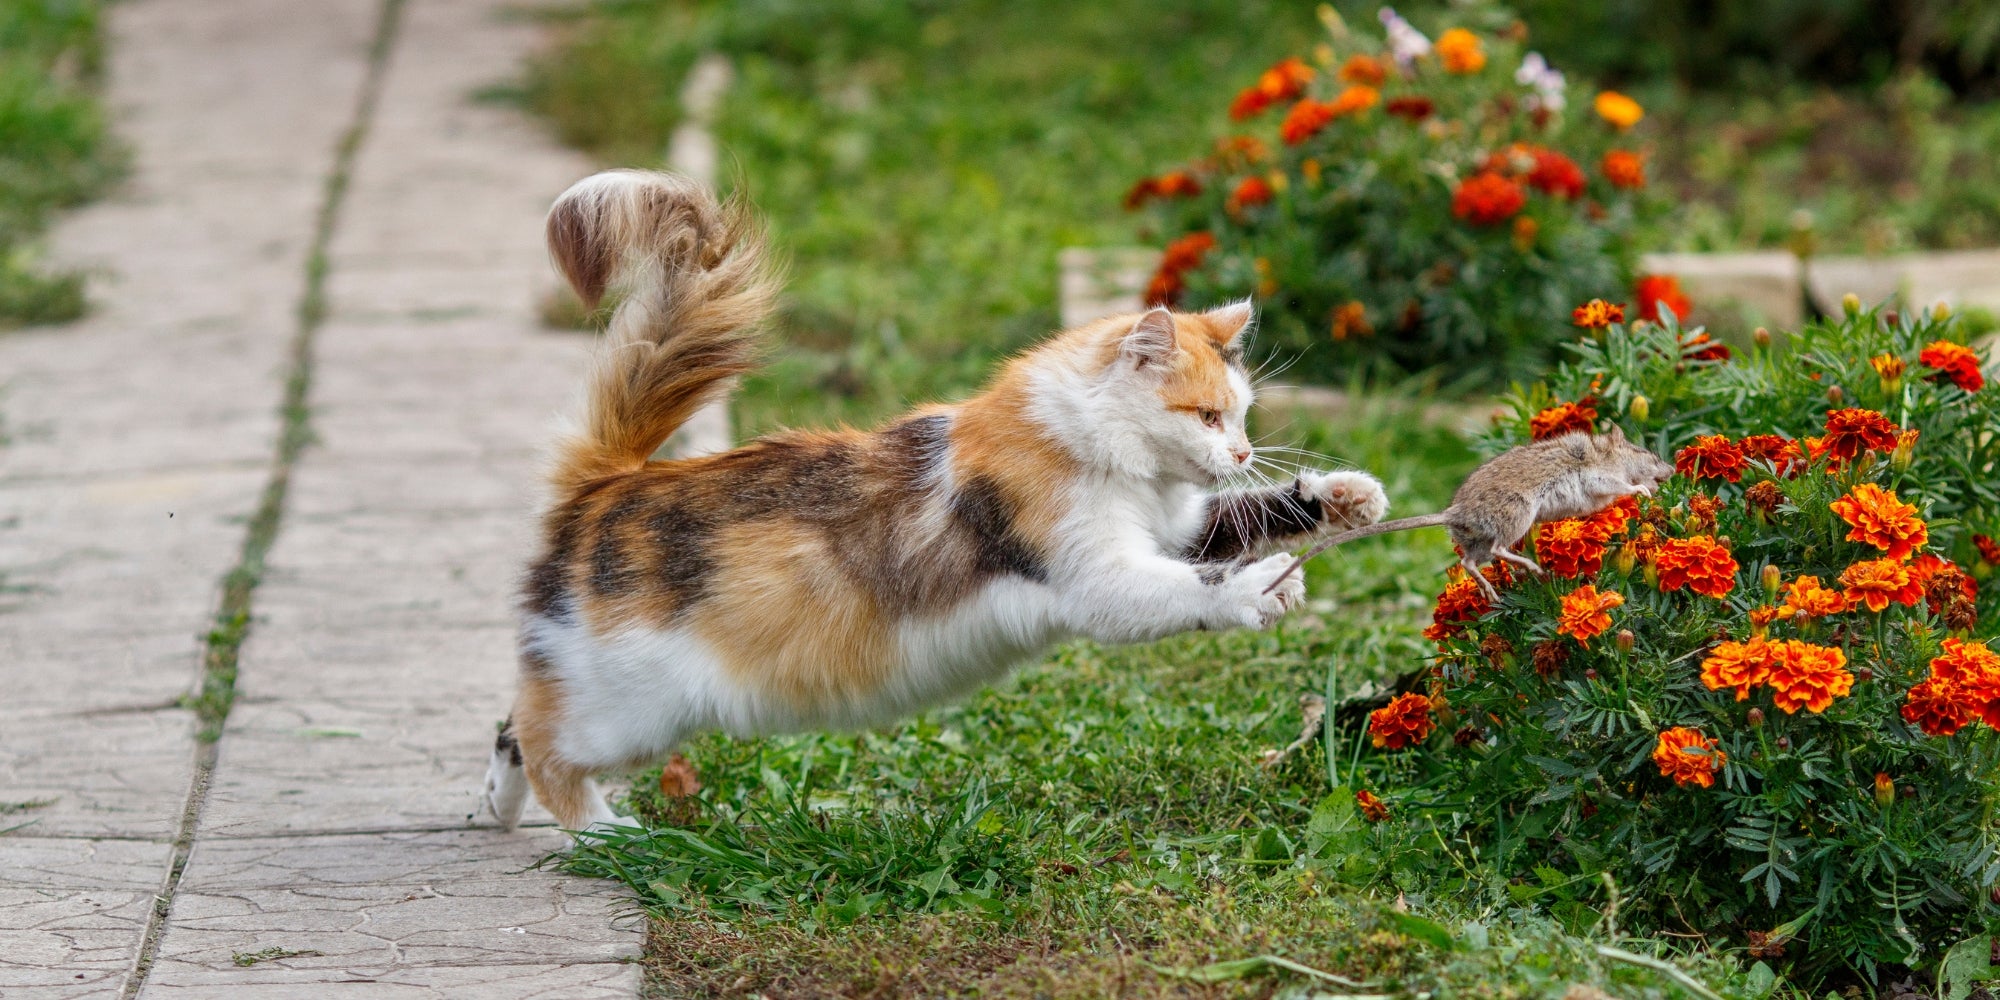 gato jugando en el jardín con una rata de roedor atrapada rebotando alto y lanzándola